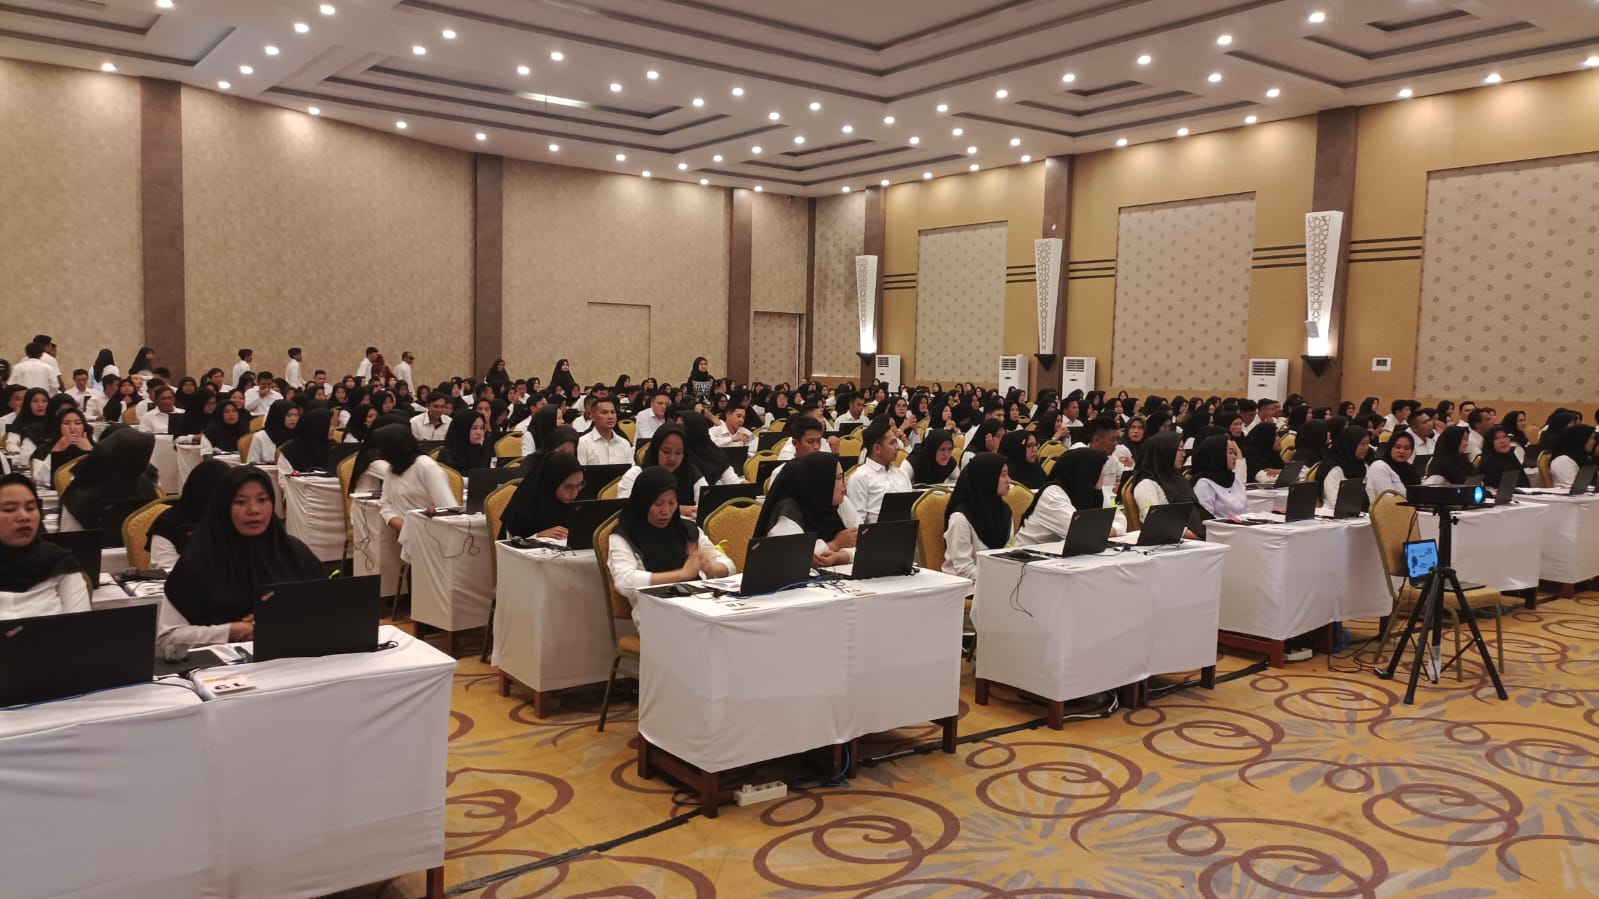 Hari Pertama Seleksi Kompetensi PPPK Lampung Barat, 370 Peserta Hadir